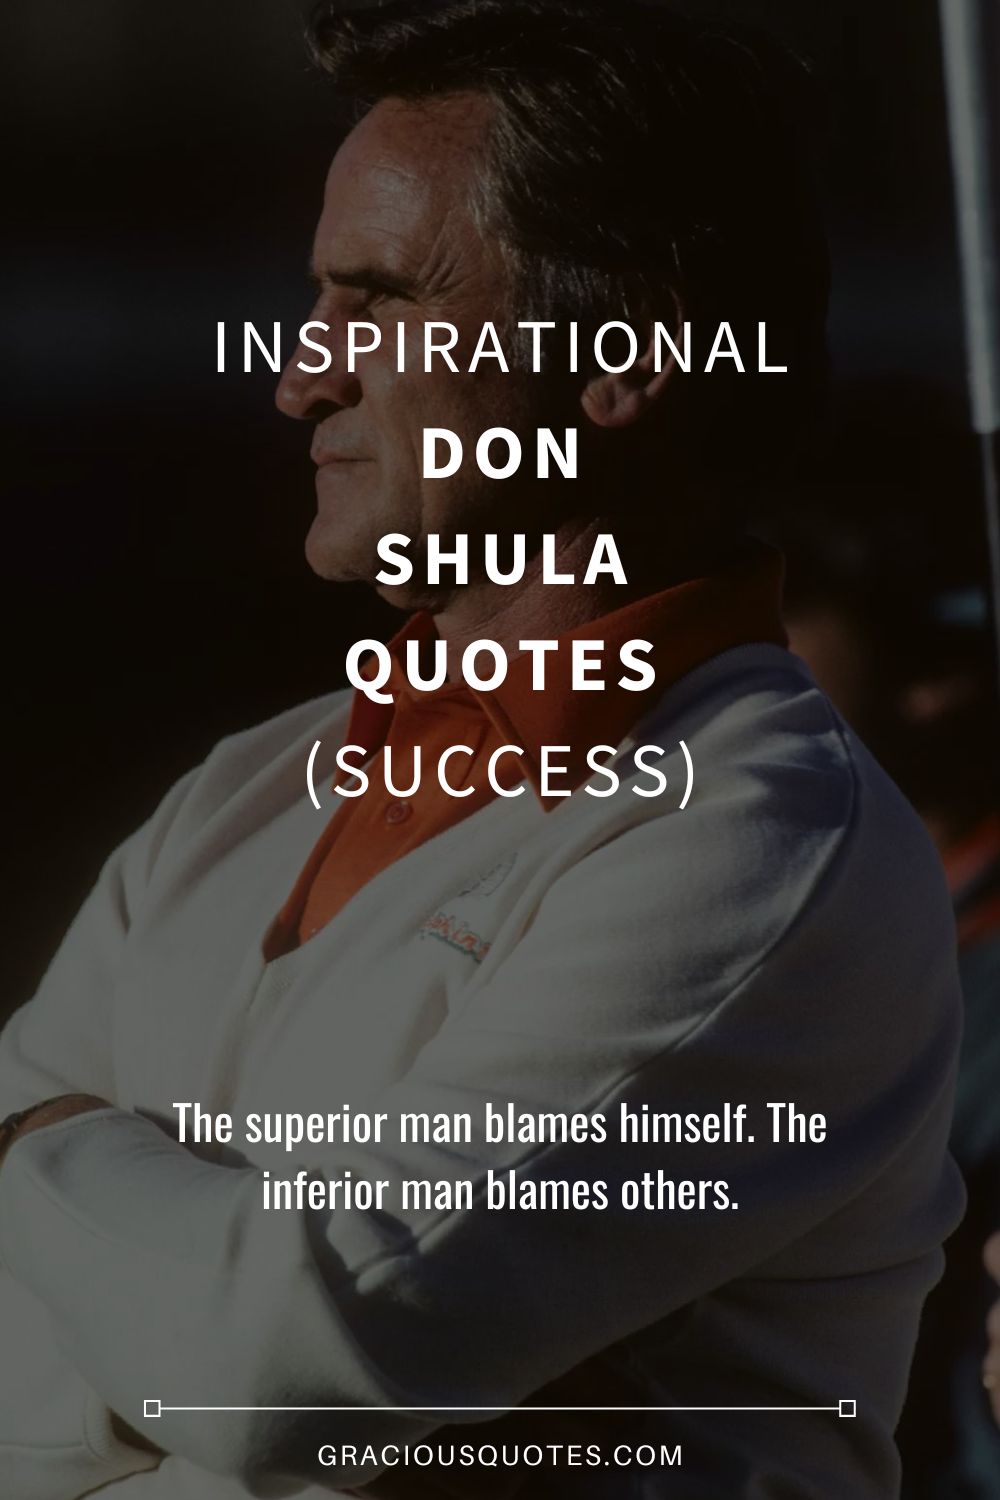 Inspirational Don Shula Quotes (SUCCESS) - Gracious Quotes